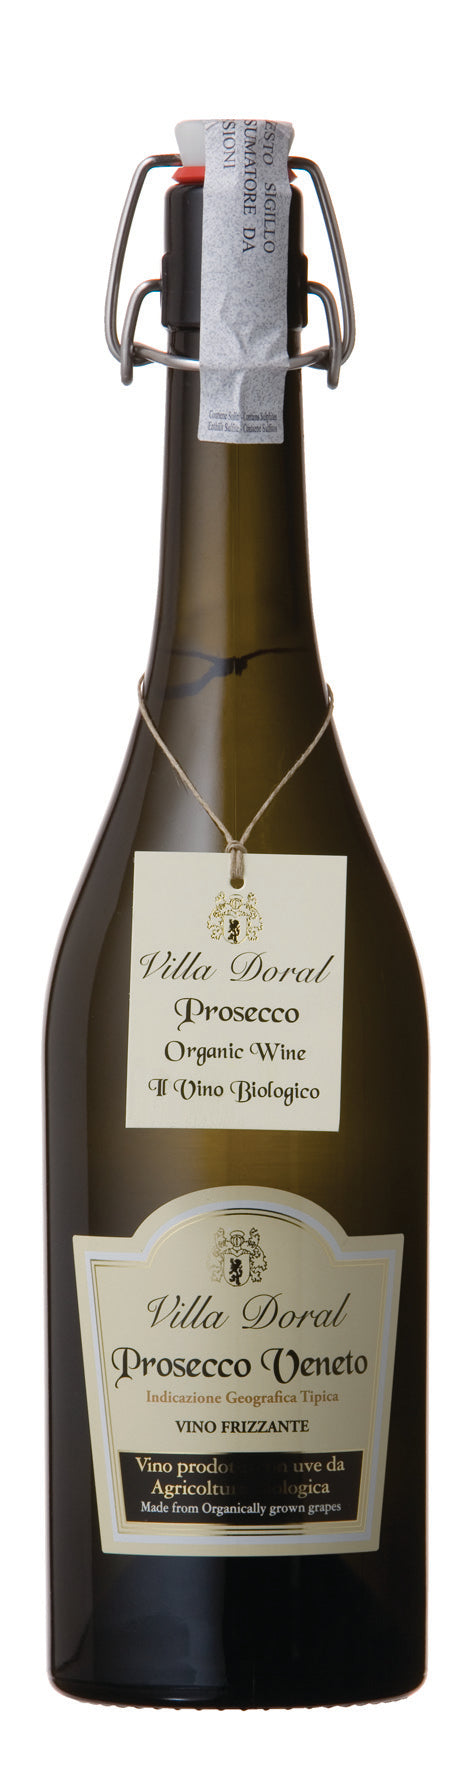 Villa Doral, Prosecco Veneto, Vino Frizzante Organic